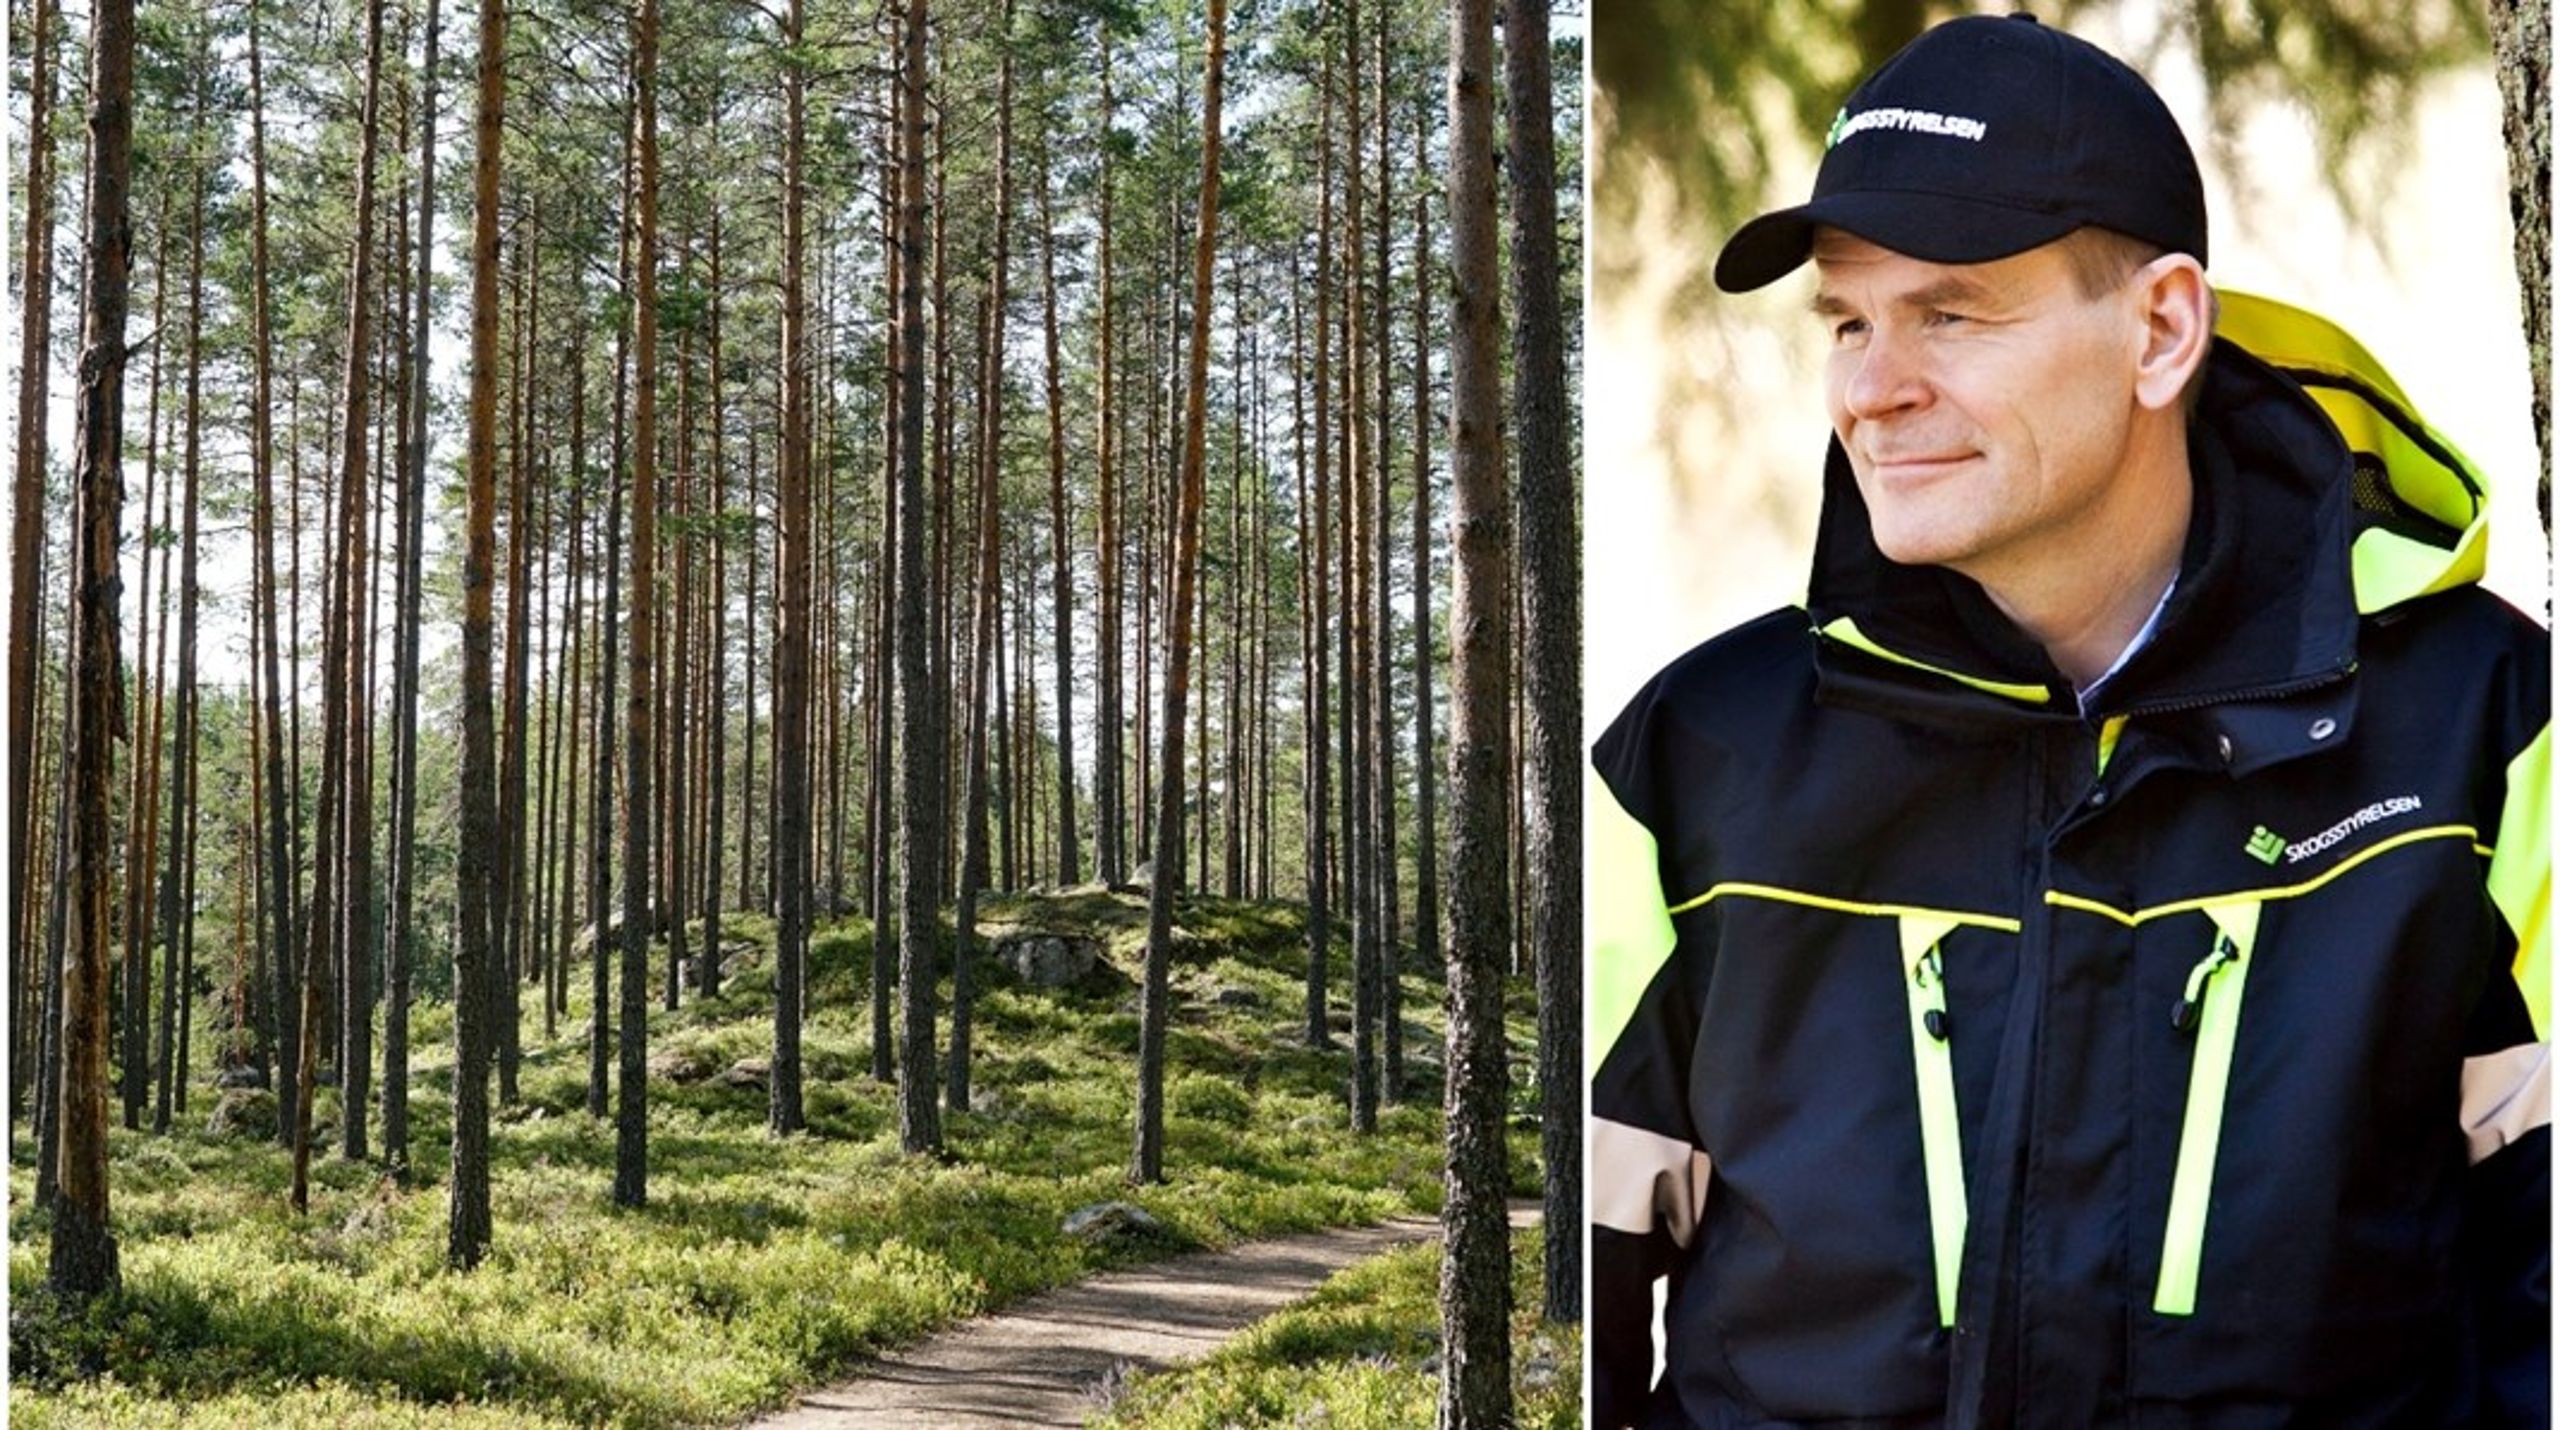 ”Skogsstyrelsens generaldirektör Herman Sundqvist har under sina sex år inom Skogsstyrelsen kraftigt nedmonterat myndighetens naturvårdsarbete vilket skadat myndighetens trovärdighet som opartisk instans.”